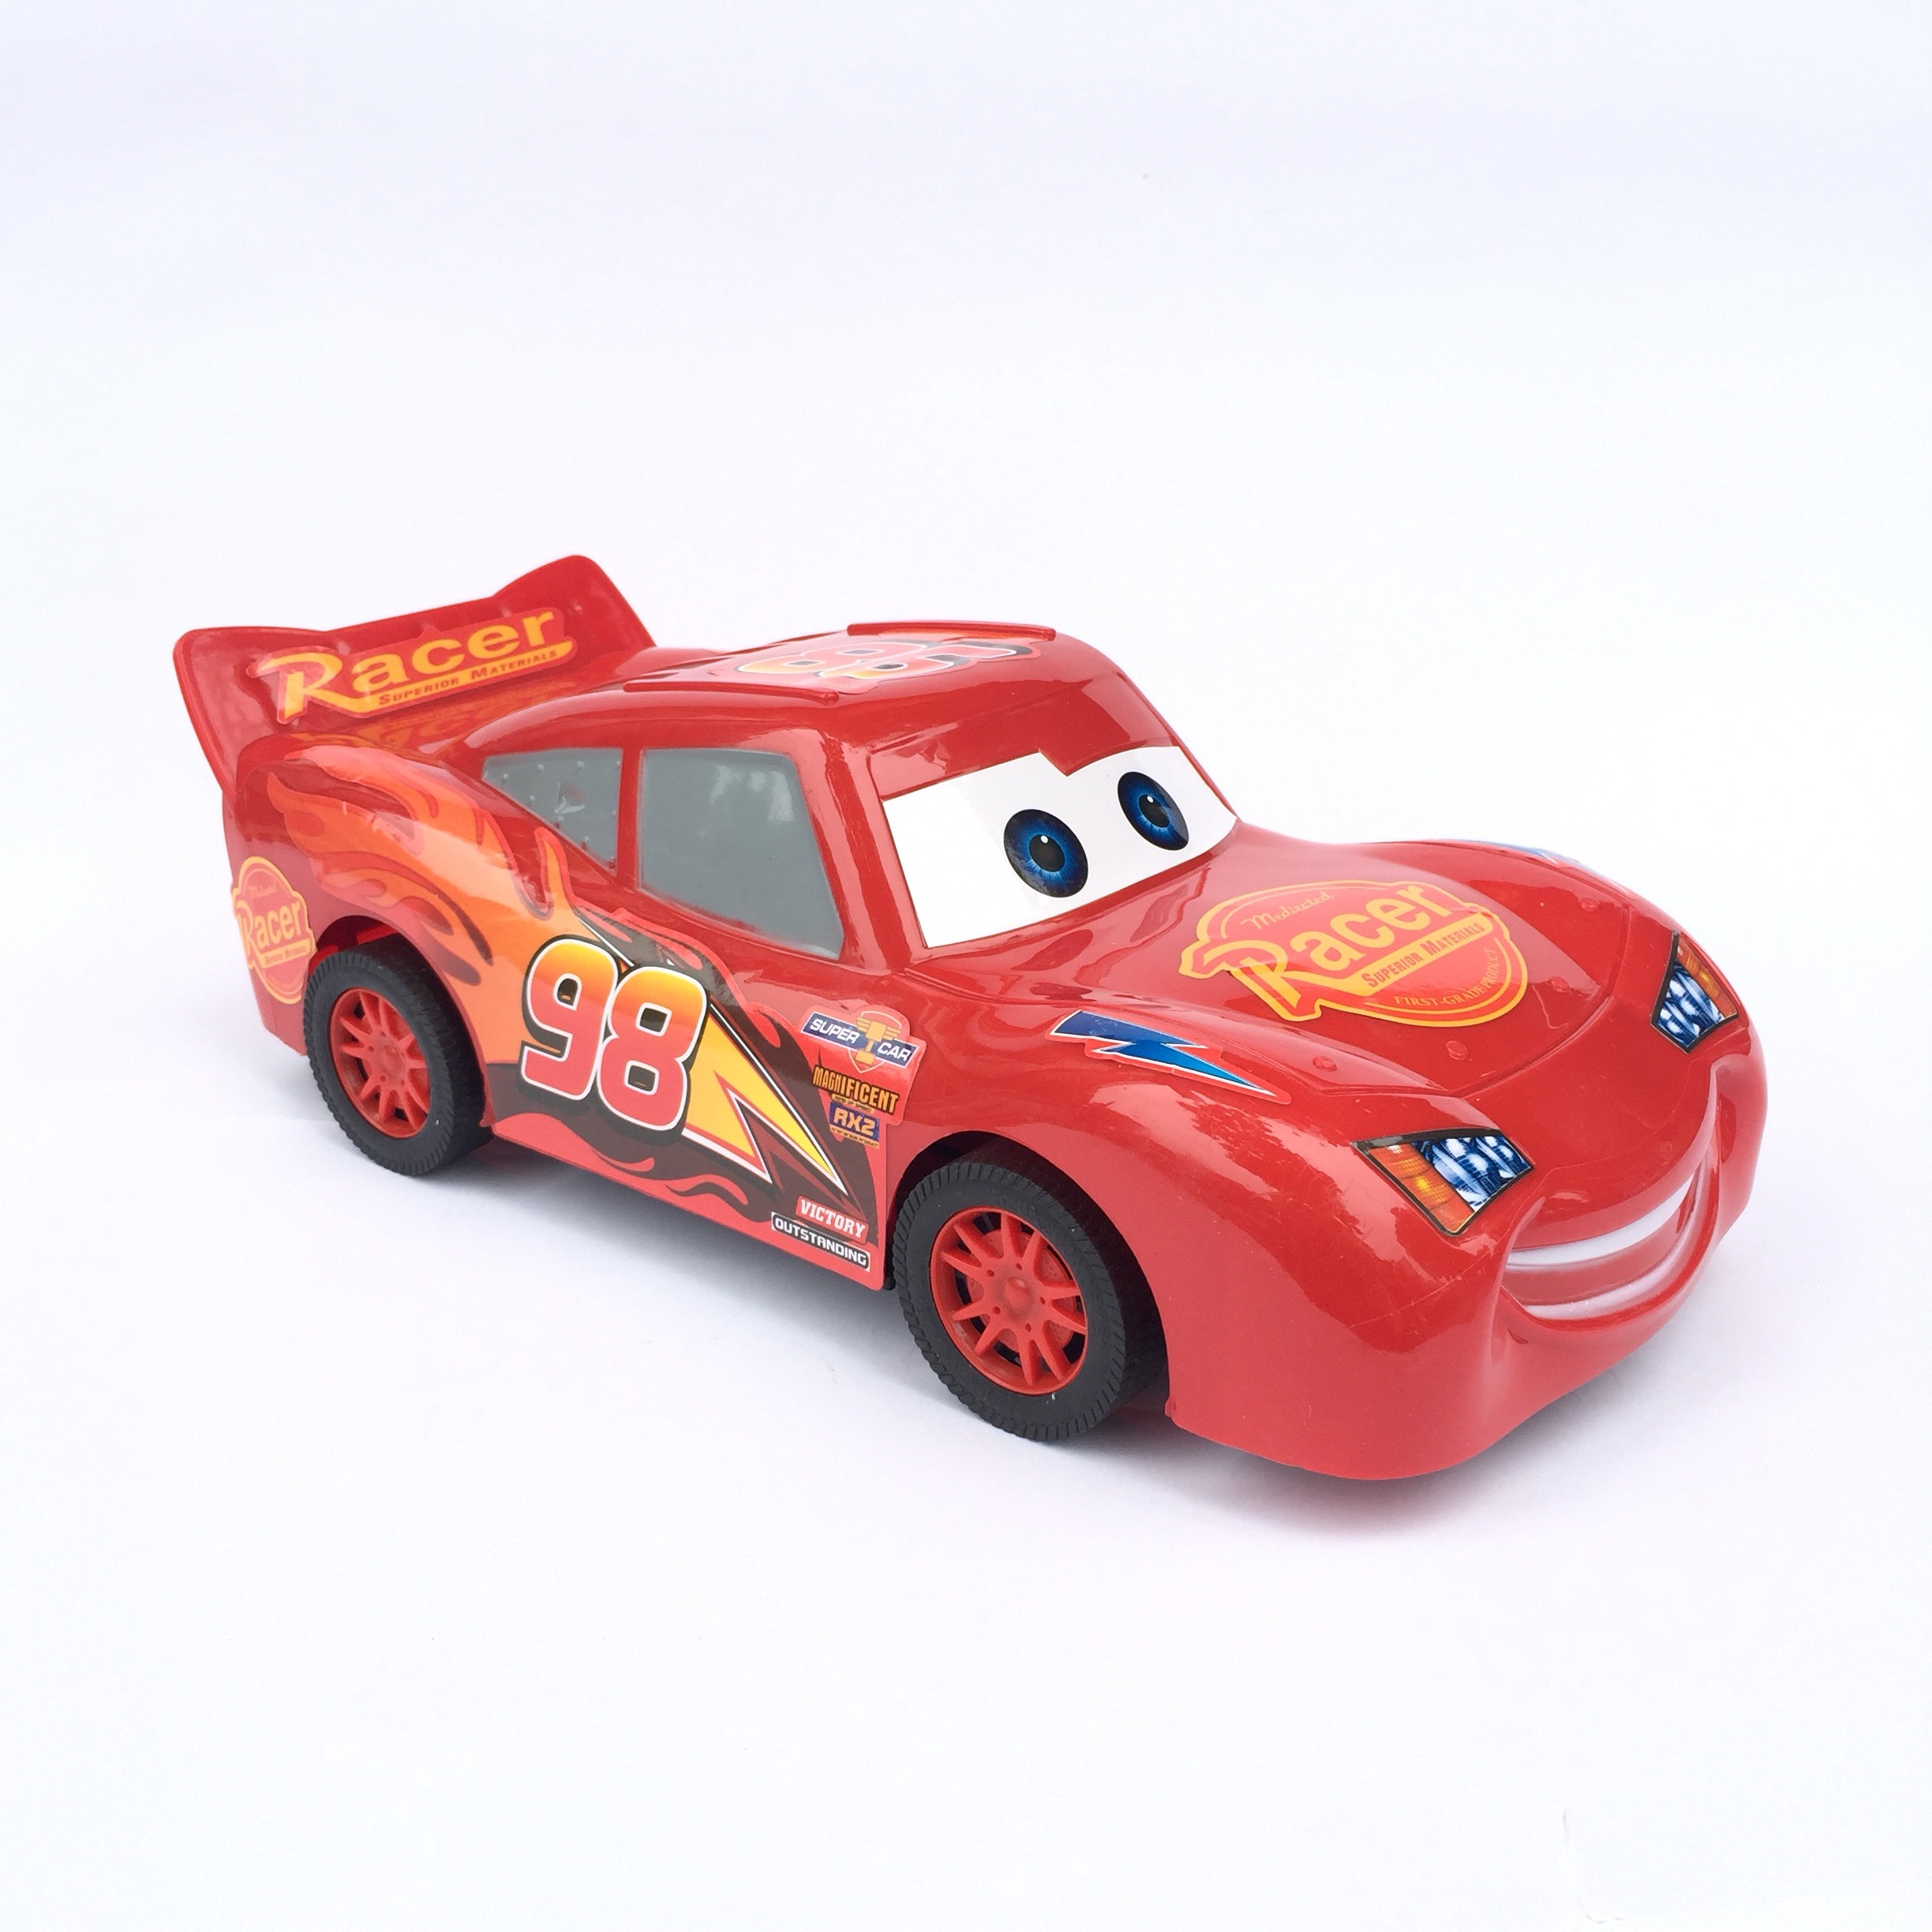 Đồ chơi xe ô tô mô hình bánh đà Macqueen hoạt hình: Năm 2024, đồ chơi xe ô tô mô hình bánh đà Macqueen hoạt hình sẽ là lựa chọn tuyệt vời cho các fan của người anh hùng trong bộ phim hoạt hình Cars. Với độ chi tiết cao, các loại xe mô hình này sẽ làm bừng sáng khả năng sáng tạo và trí tưởng tượng của trẻ em.